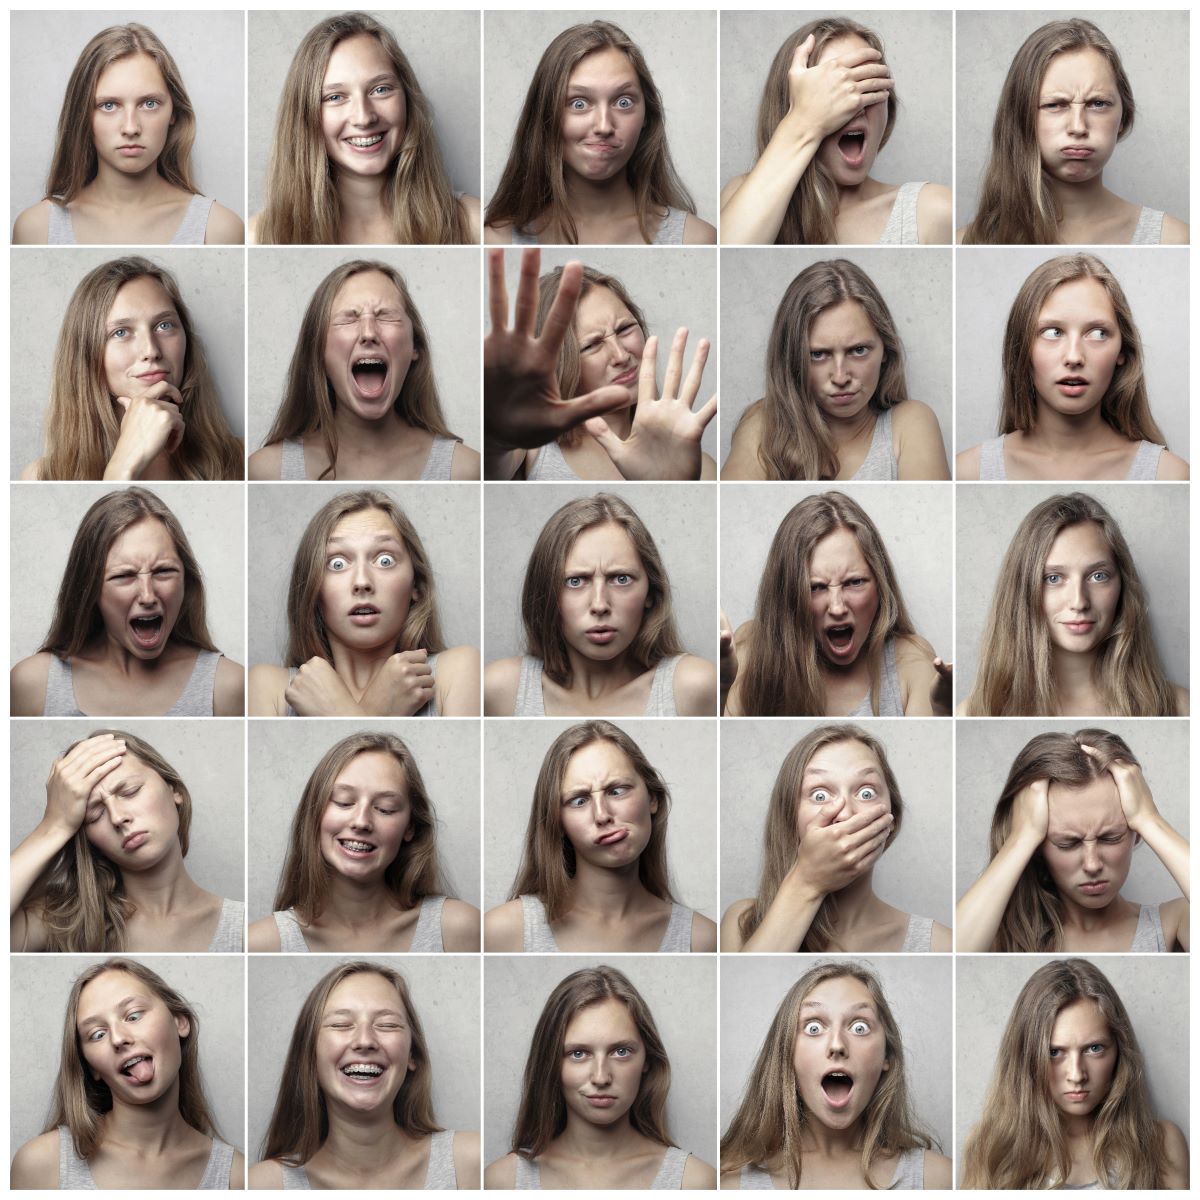 Profilbilder in unterschiedlichen Stimmungslagen